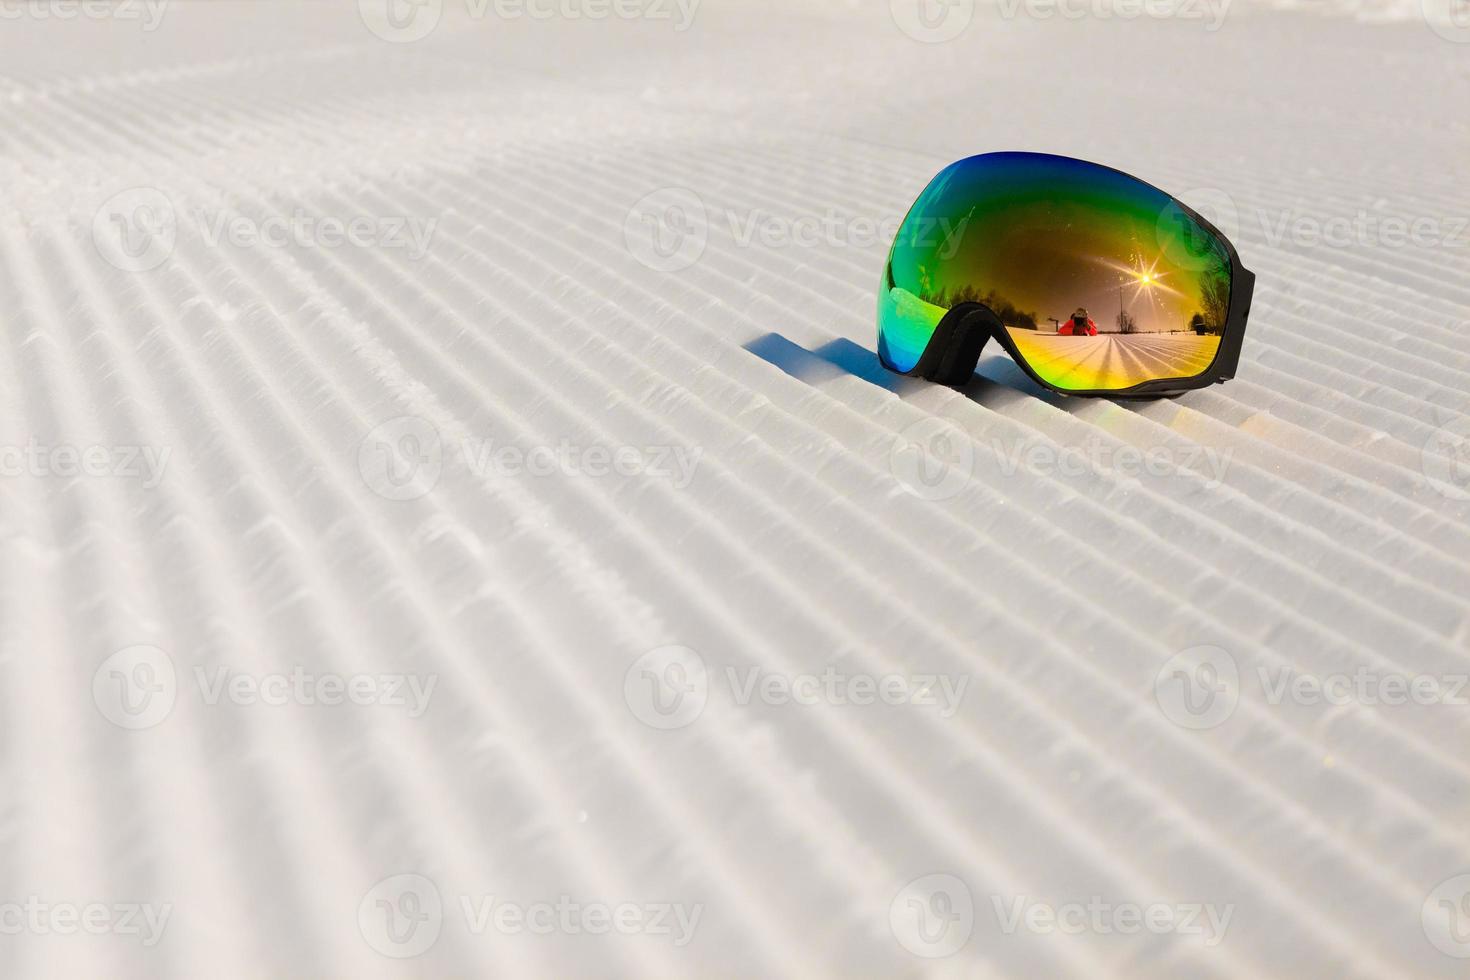 occhiali da sci posati su una nuova neve battuta e una pista da sci vuota foto